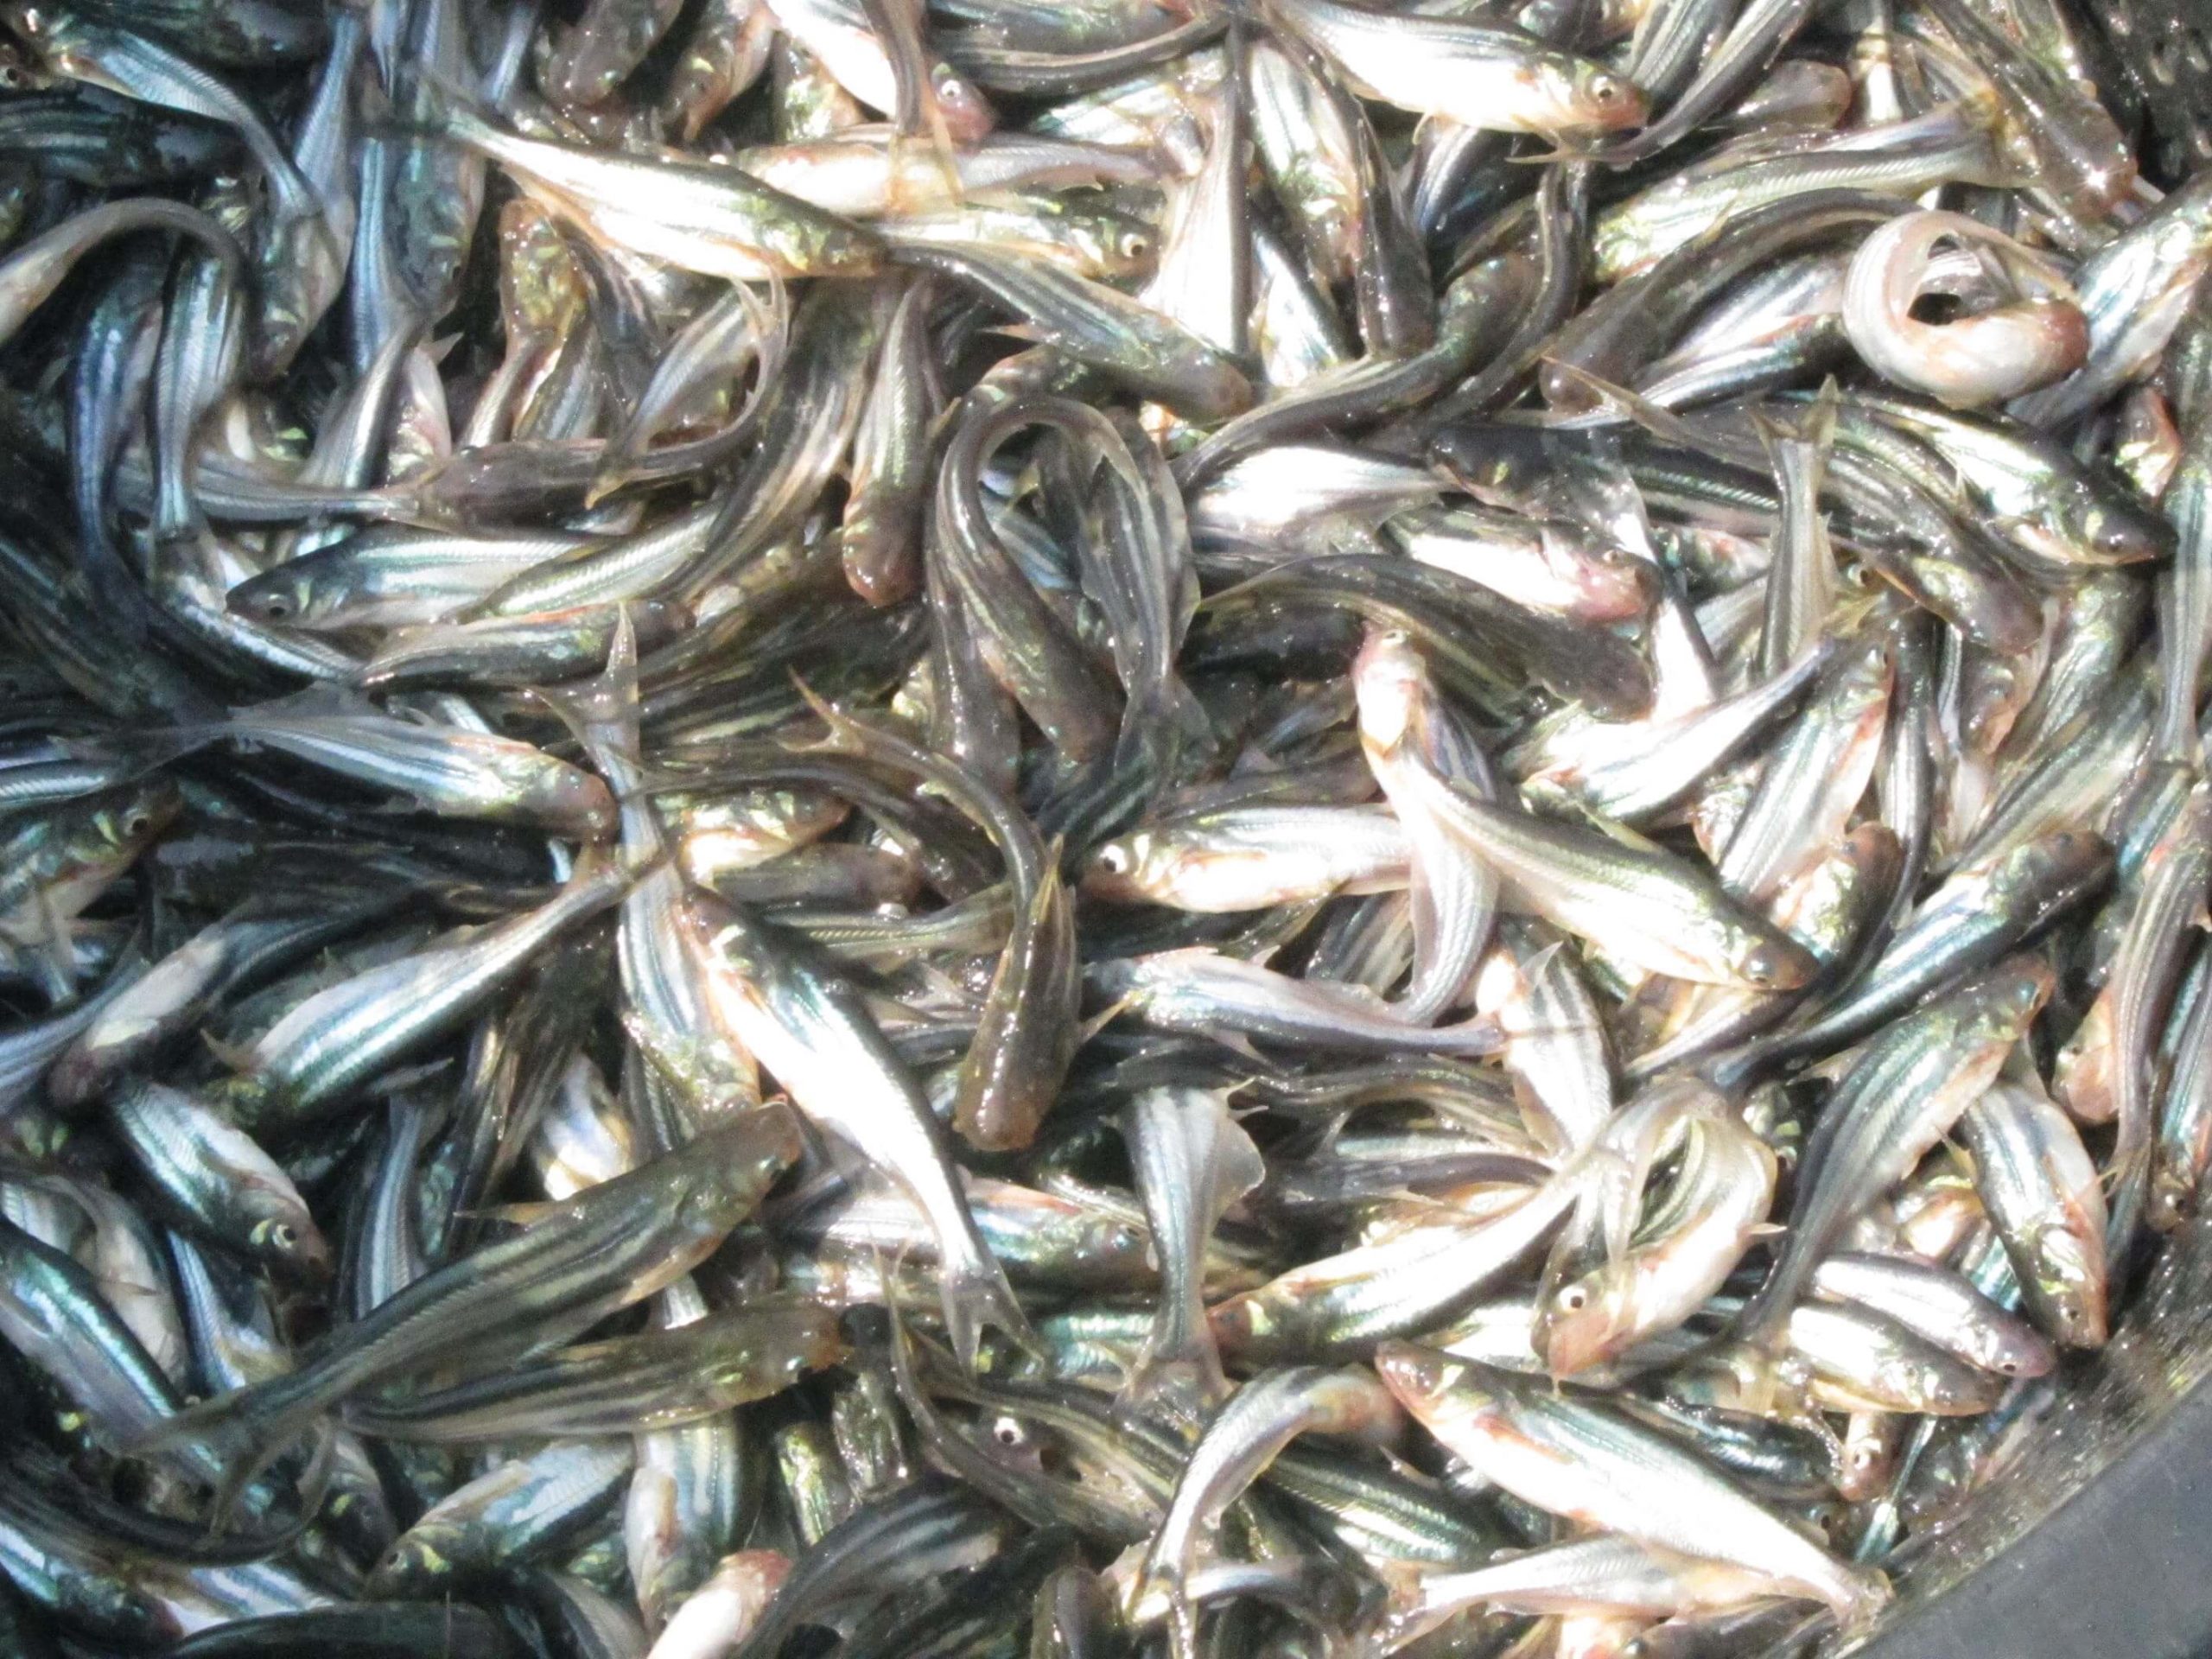   6 Panduan Cara Budidaya  Ikan  Patin  di Kolam Terpal  untuk 